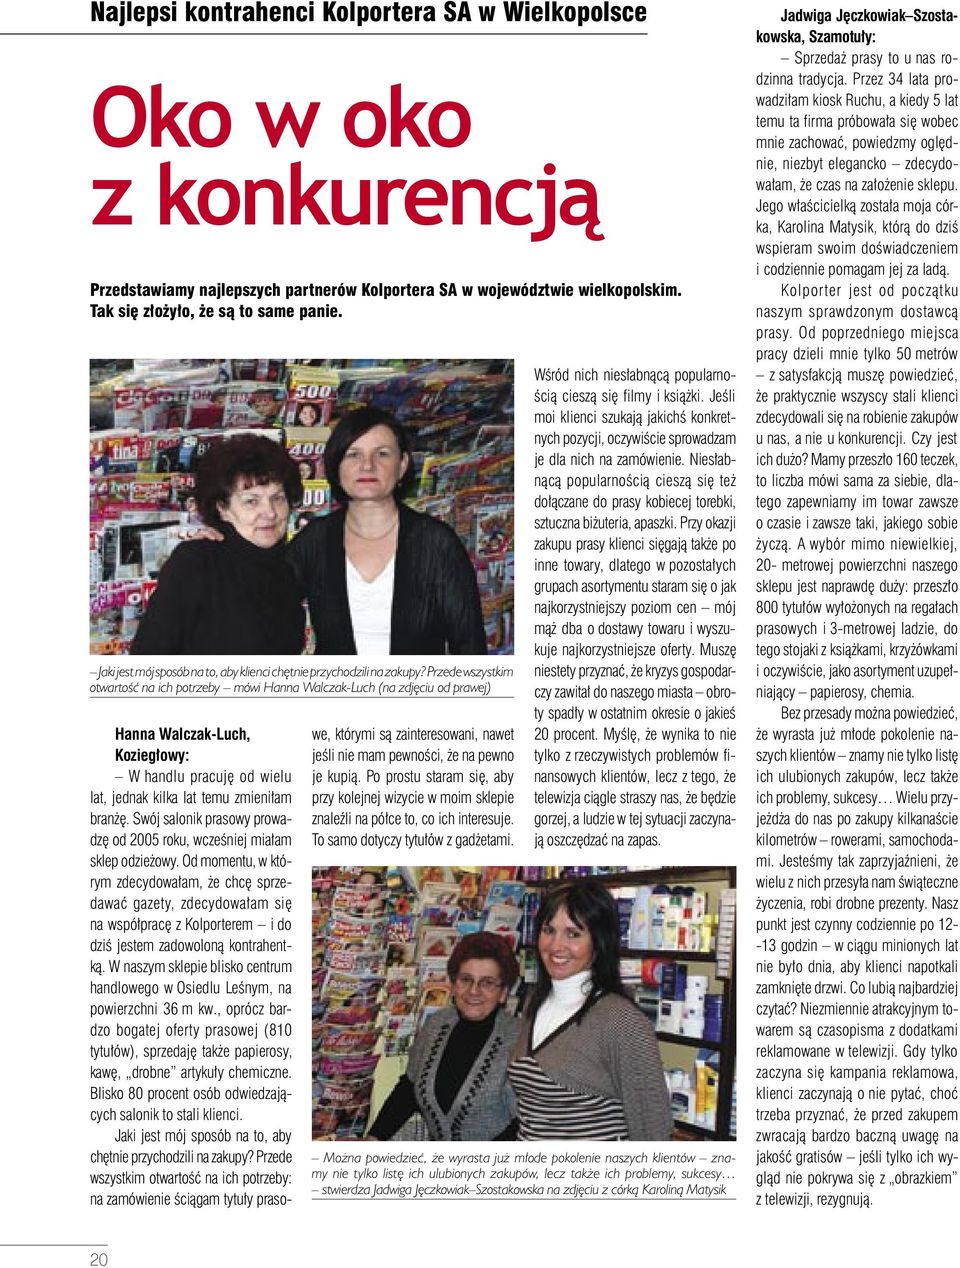 Przede wszystkim otwartość na ich potrzeby mówi Hanna Walczak-Luch (na zdjęciu od prawej) Hanna Walczak-Luch, Koziegłowy: W handlu pracuję od wielu lat, jednak kilka lat temu zmieniłam branżę.